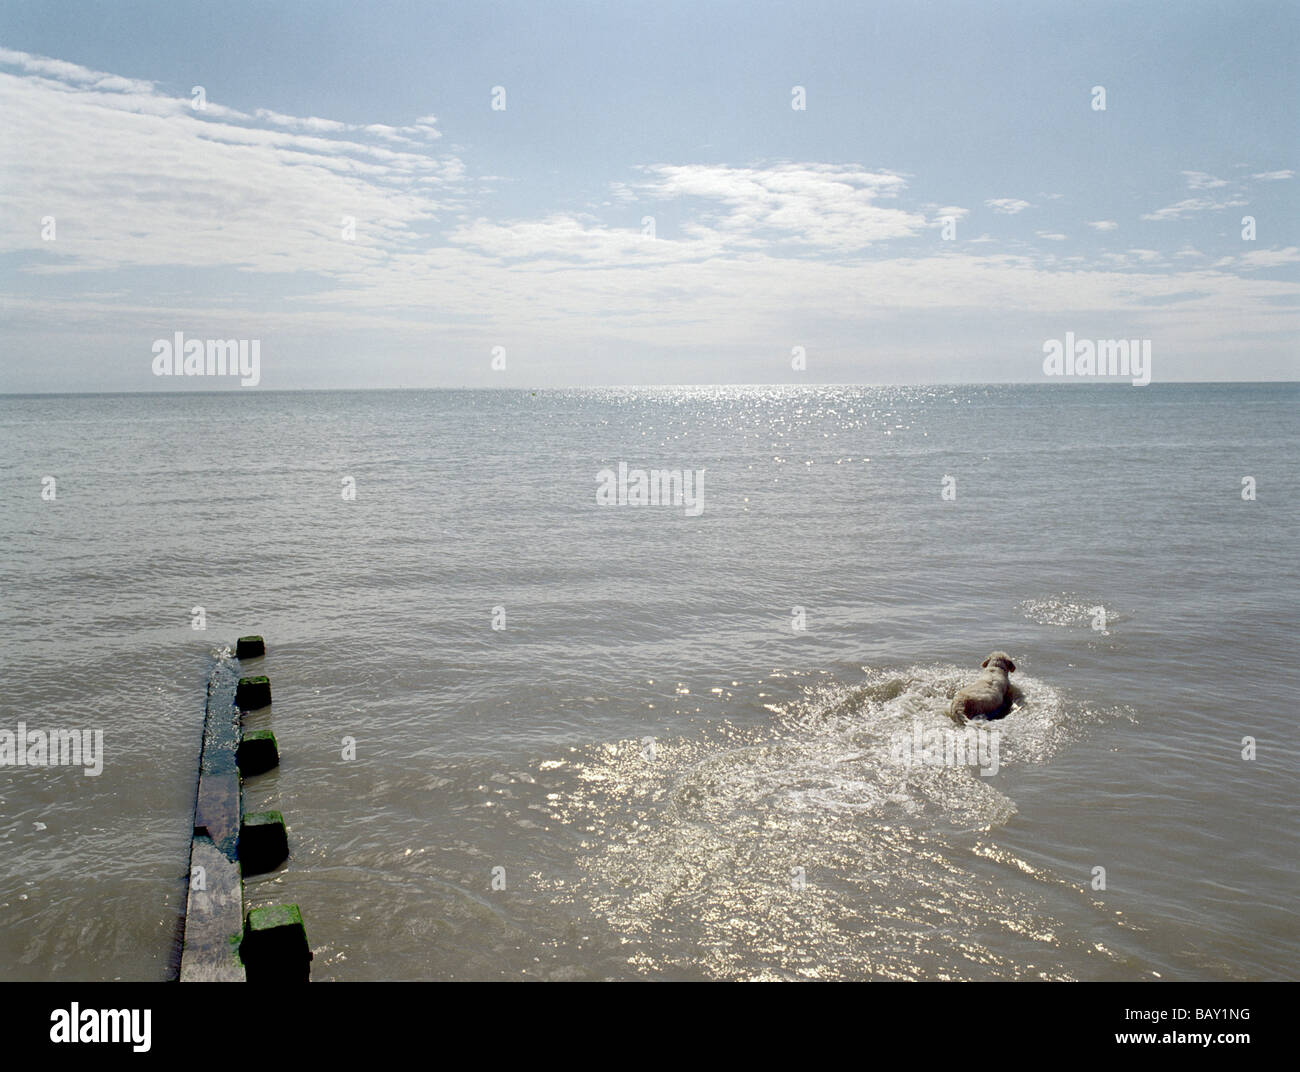 Cane di nuoto nel vasto mare aperto, Pevensey Beach, Pevensey Bay, East Sussex, sud-est dell' Inghilterra, Inghilterra, Gran Bretagna Foto Stock